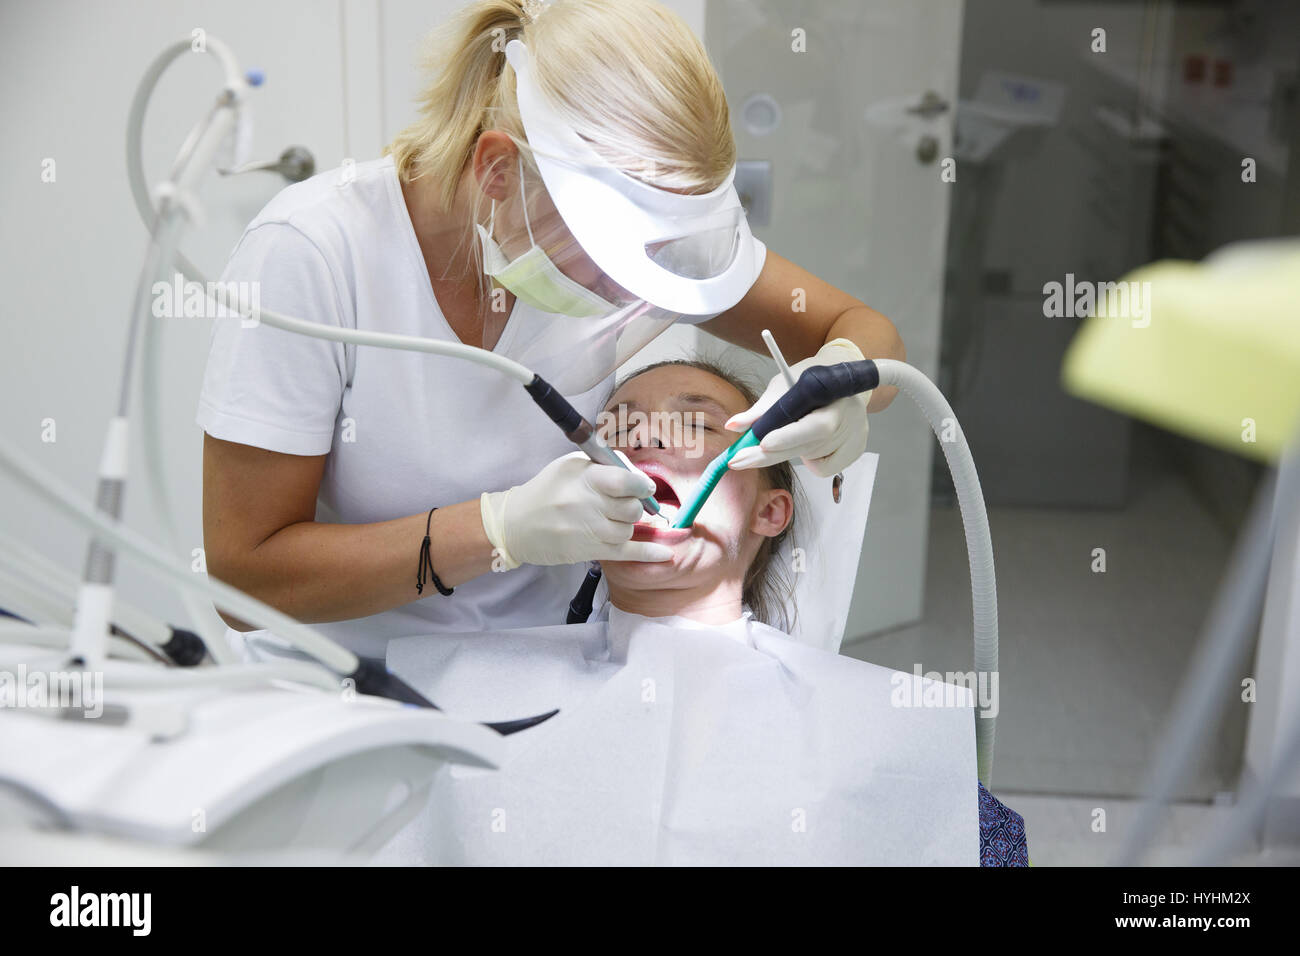 Donna in studio dentistico, dentista esaminando e pulizia i suoi denti del tartaro e della placca, prevenire la malattia periodontale. Igiene dentale, dolorose procedu Foto Stock